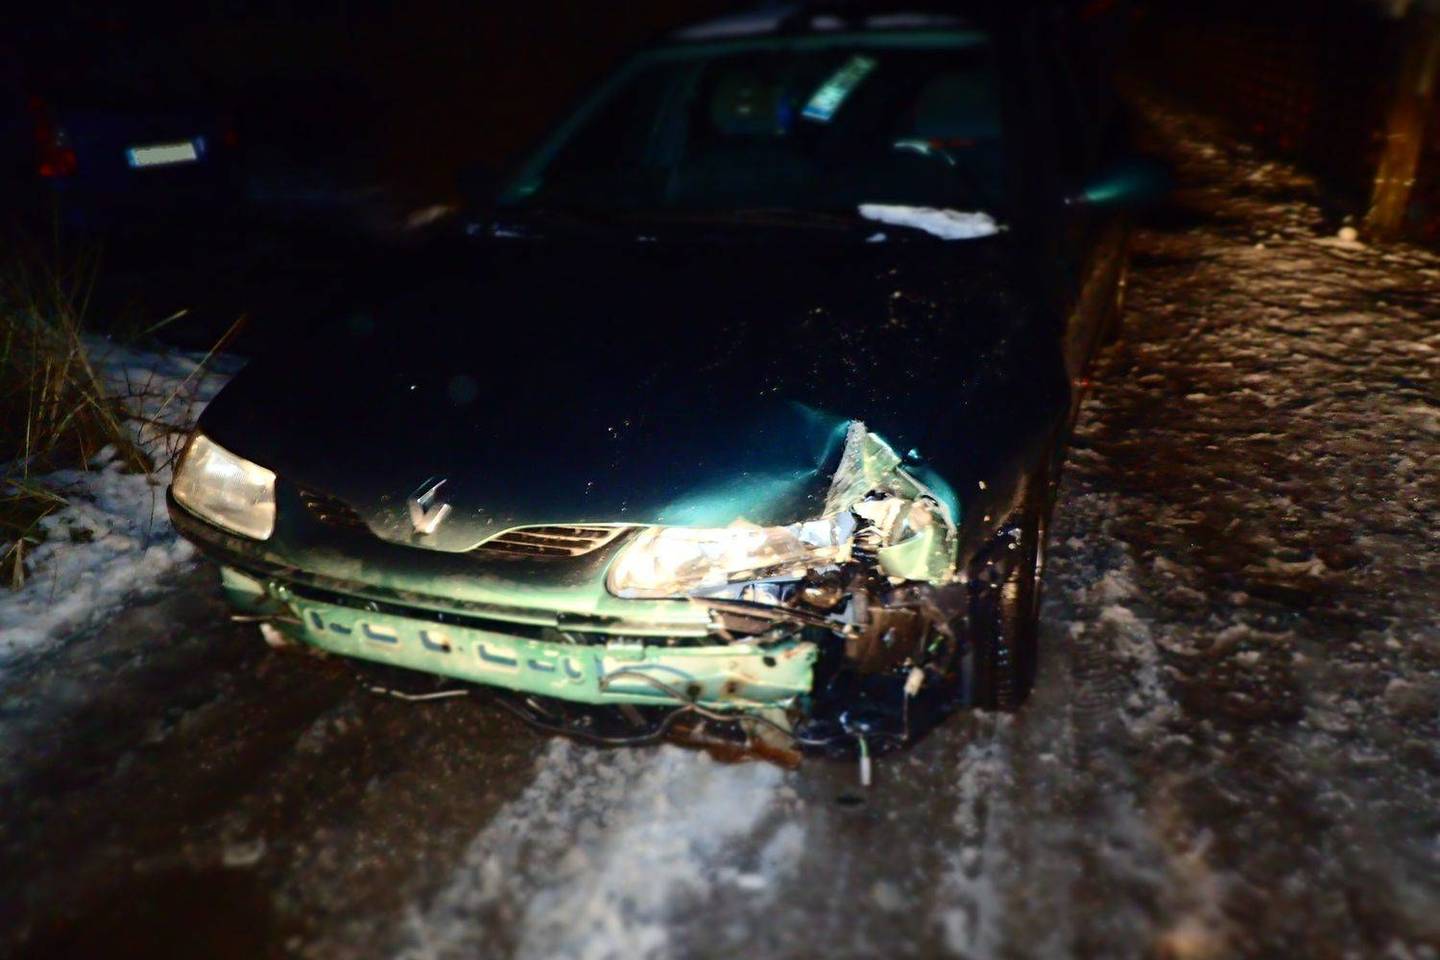  Neblaivaus vairuotojo valdomas automobilis trenkėsi į stulpą. Apie nelaimę pranešė pilietiški gyventojai. <br> Kauno policijos nuotr.